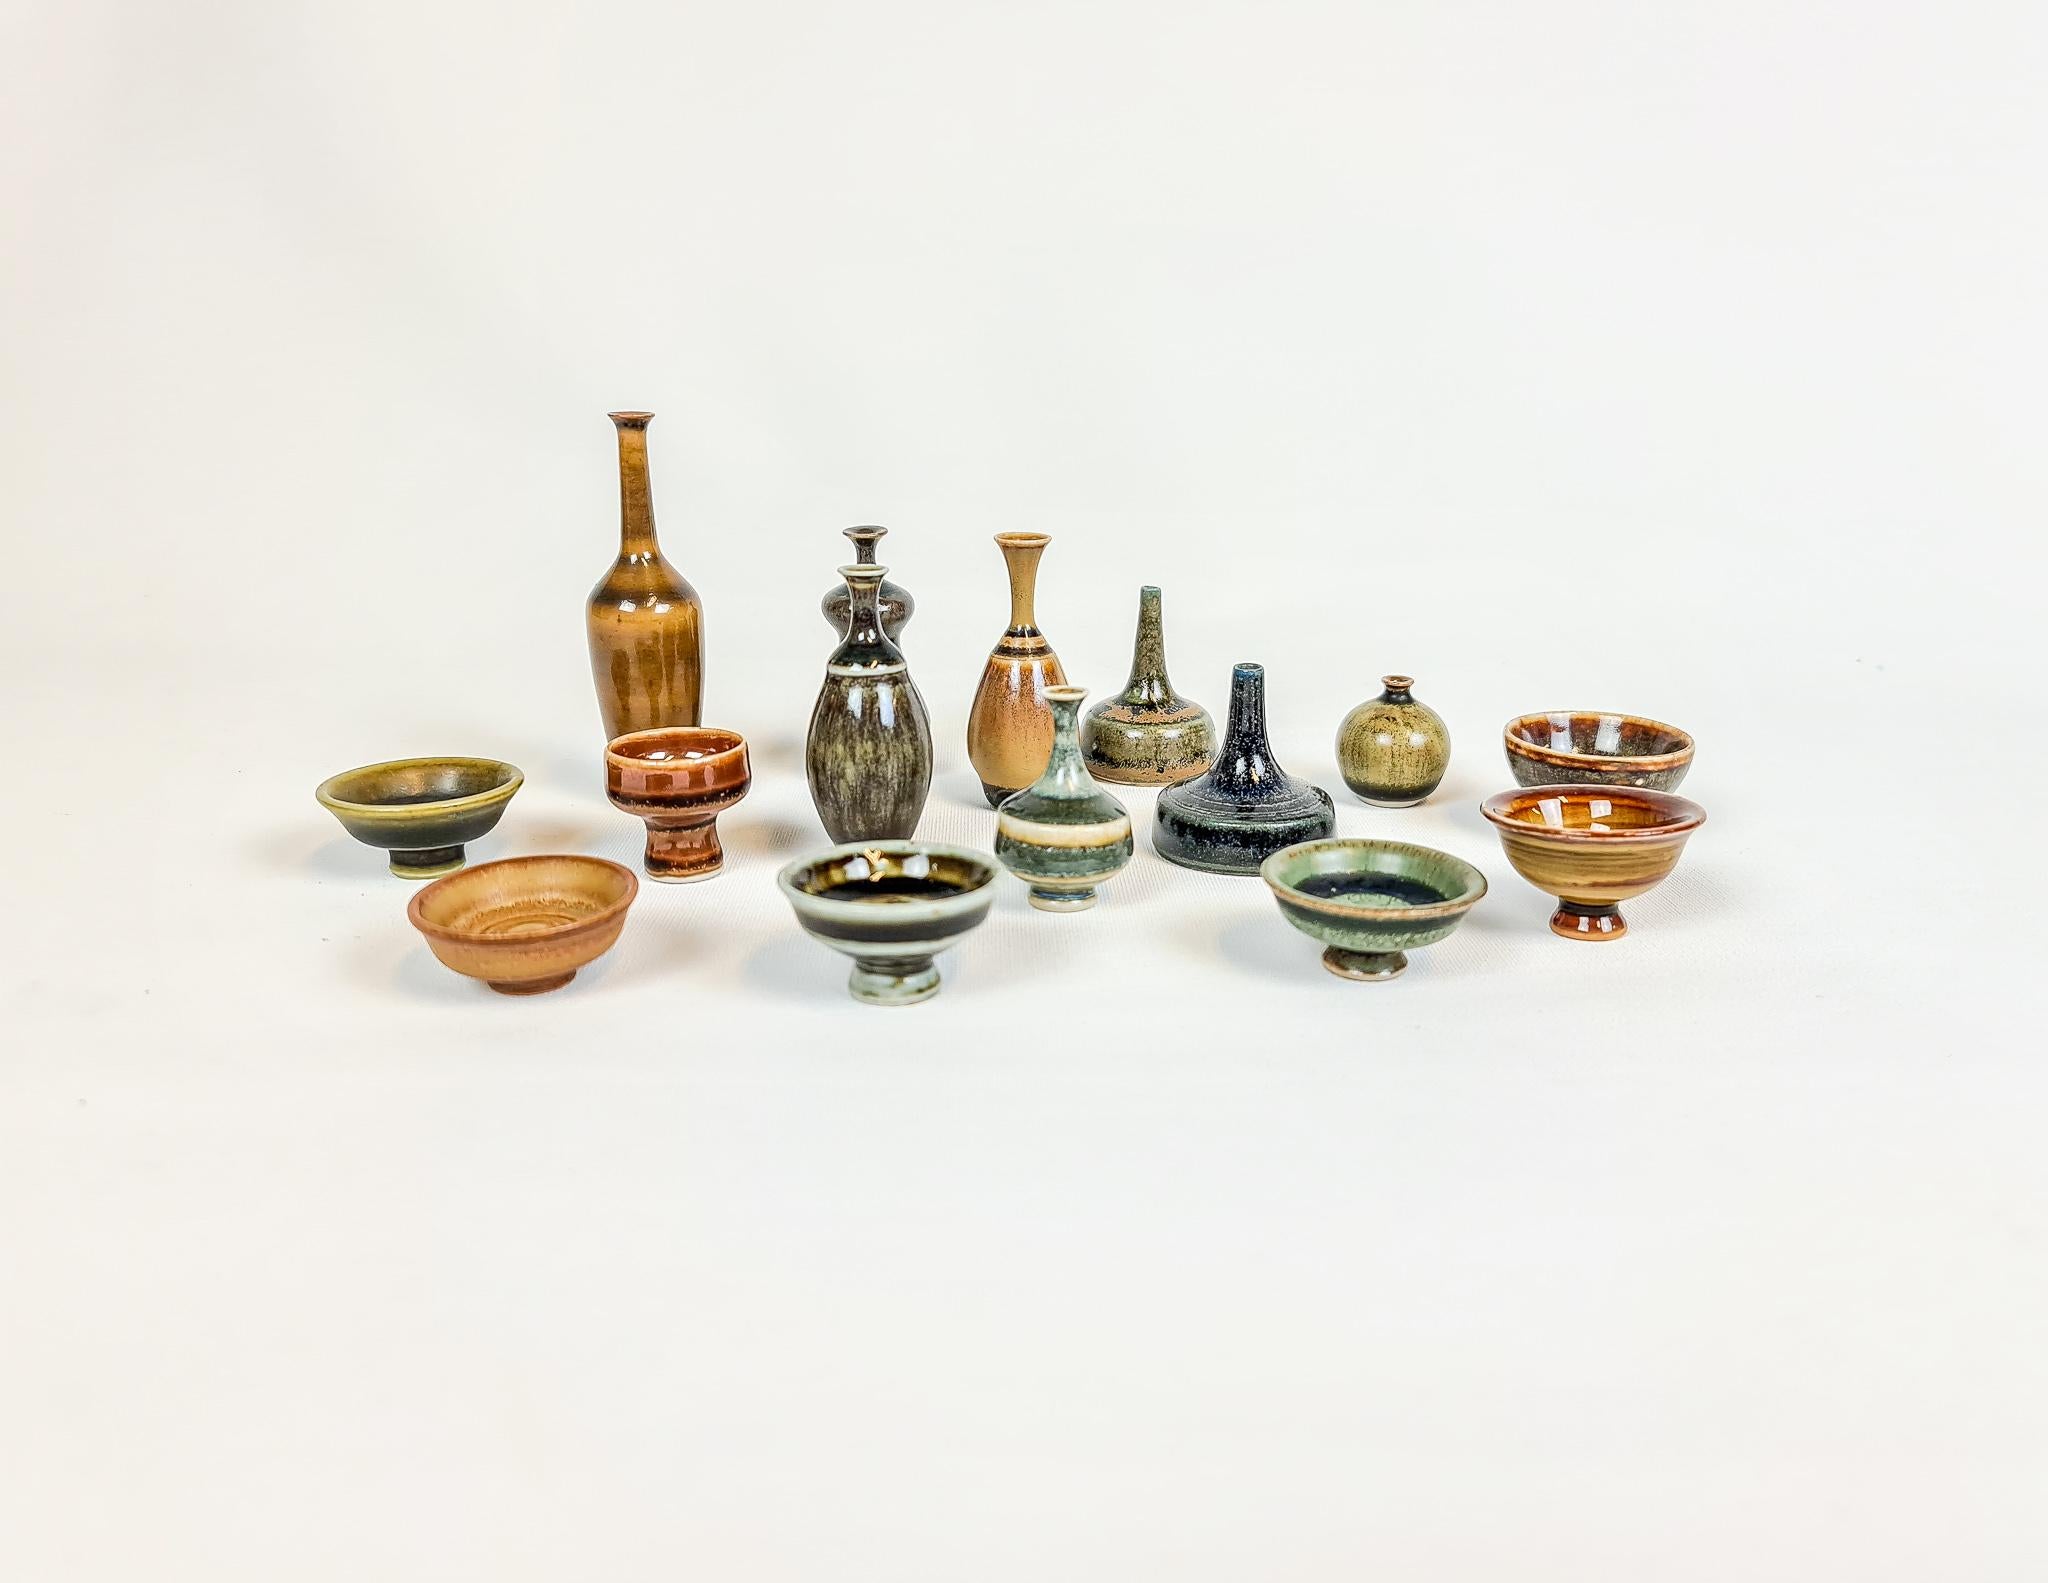 Merveilleuse collection de céramiques de petite taille / miniatures. Ceux-ci sont pour la plupart l'œuvre de John Andersson et sont produits à Höganäs en Suède. 

La sculpture et les formes sont étonnantes, tout comme la glaçure. 

Mesures : H